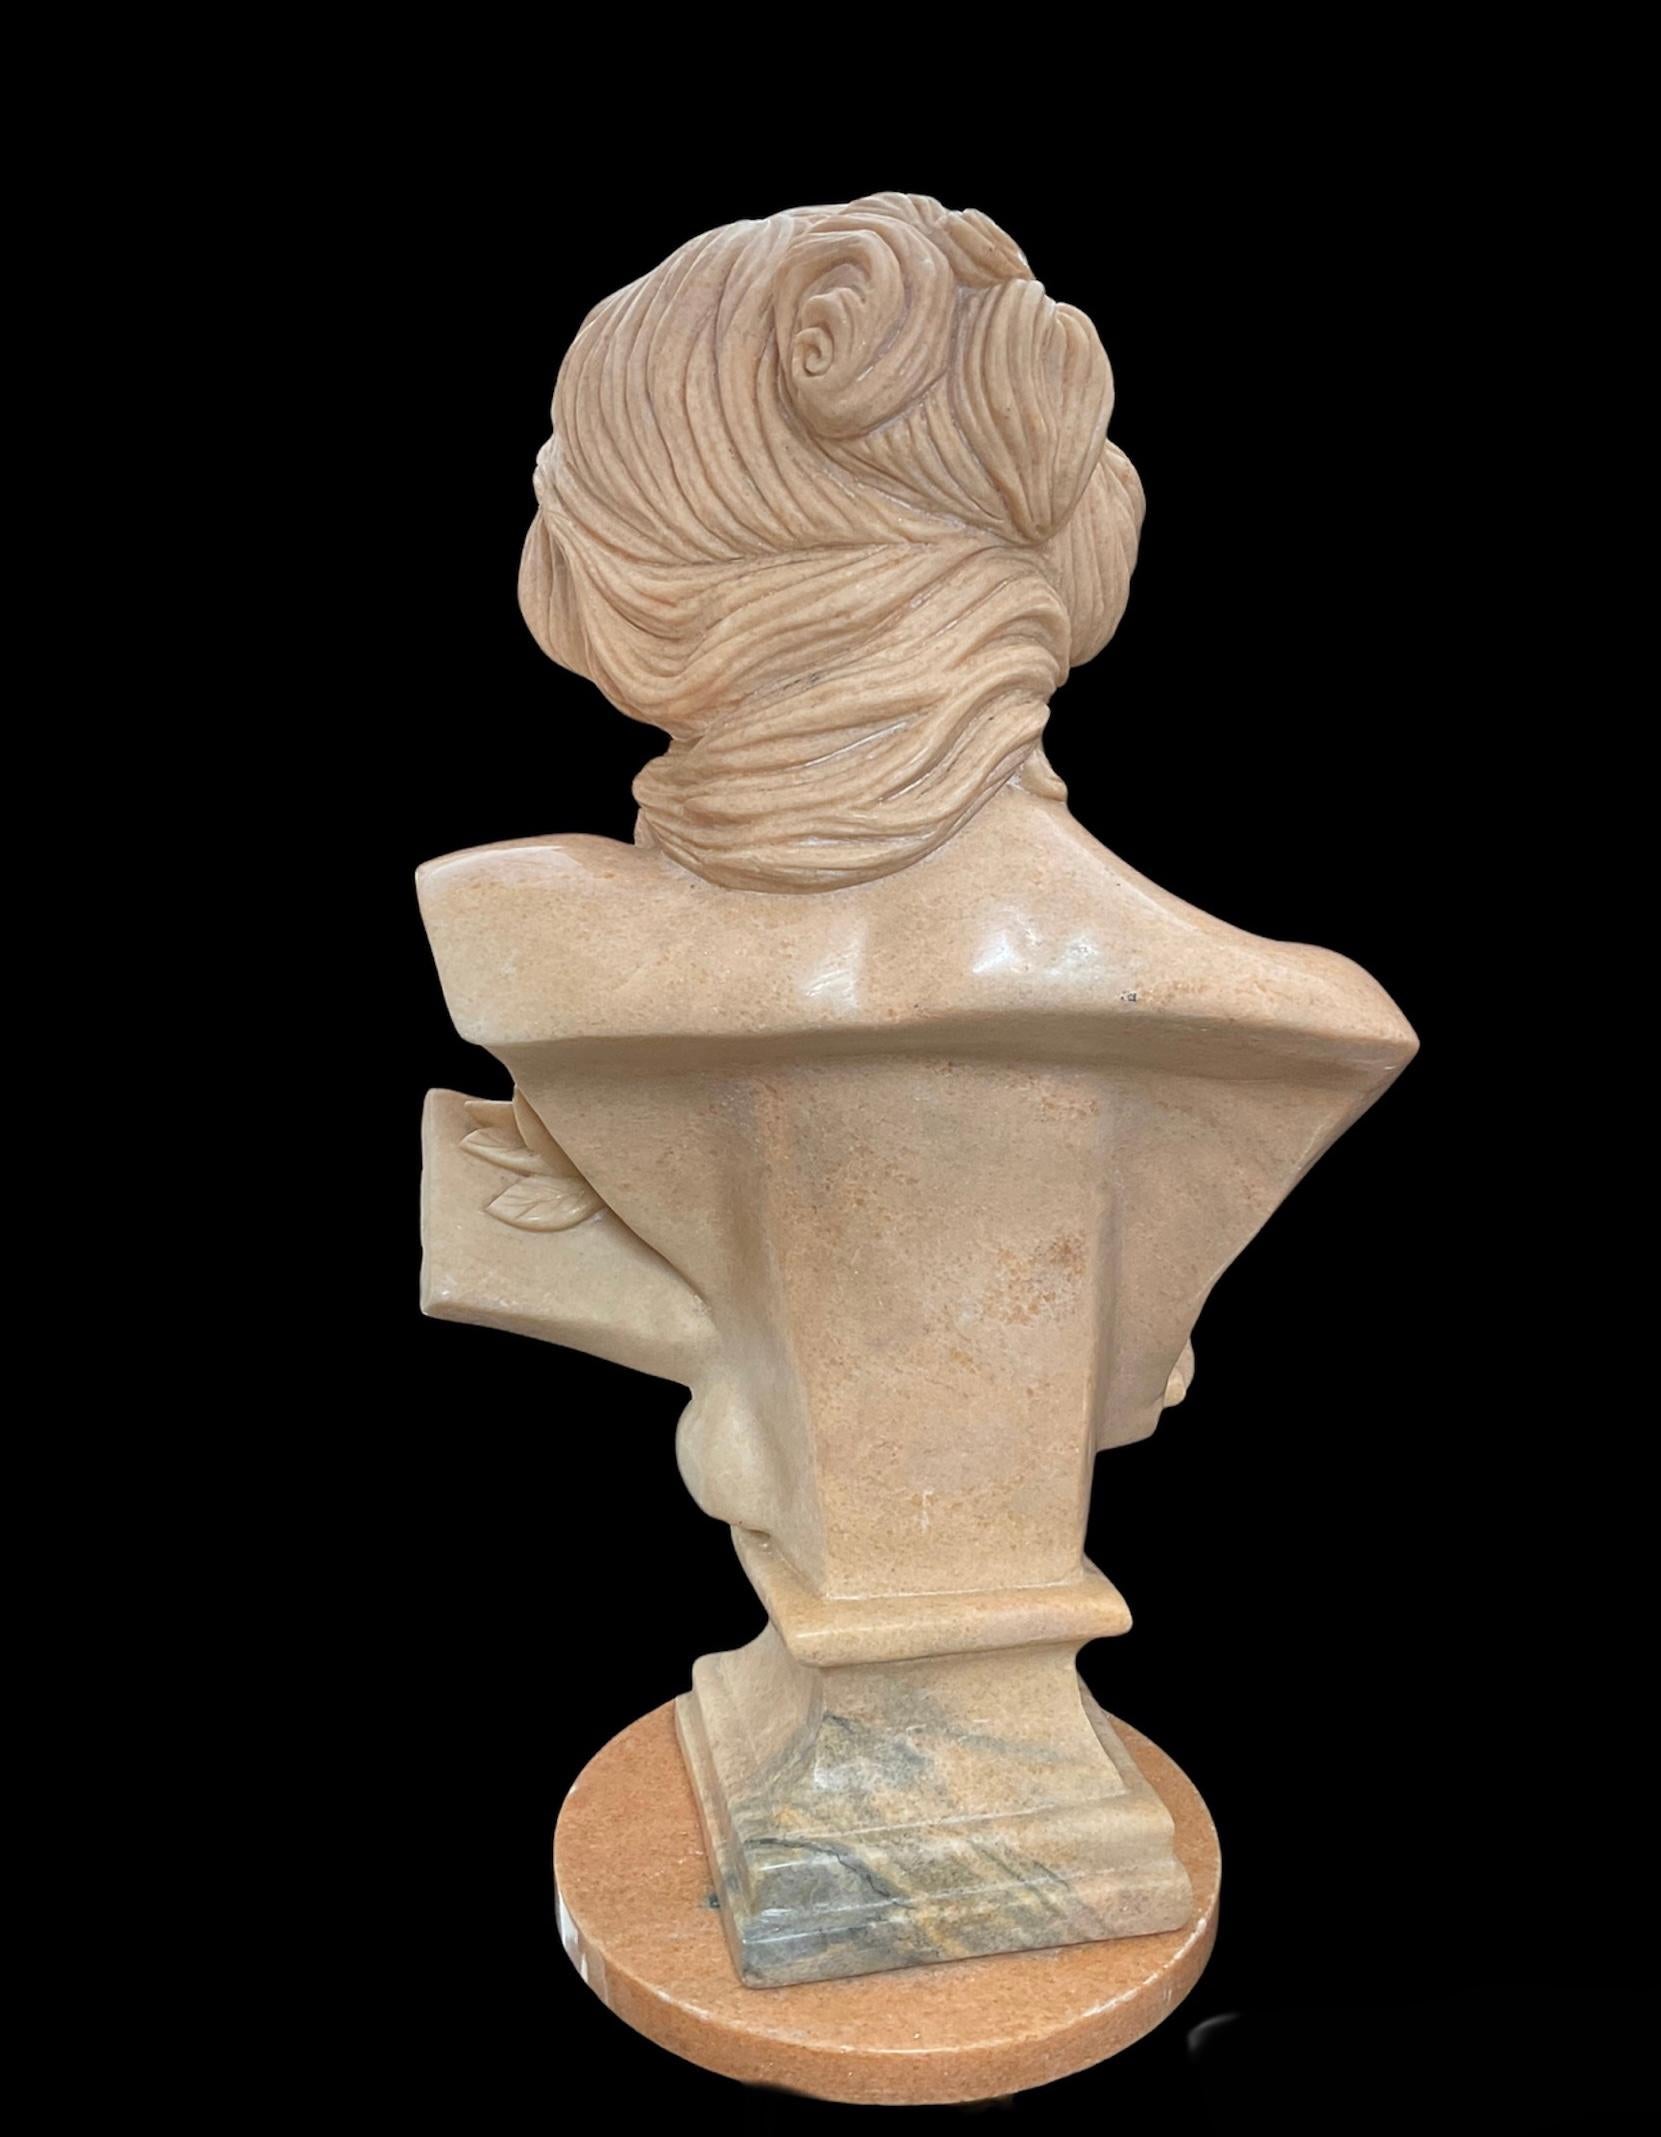 Il s'agit d'un grand buste en marbre beige rosé représentant une déesse de la musique moderne. Elle a une abondante chevelure ondulée disposée sur le côté. Sa tête est inclinée du même côté que les cheveux et elle regarde vers le bas avec un regard